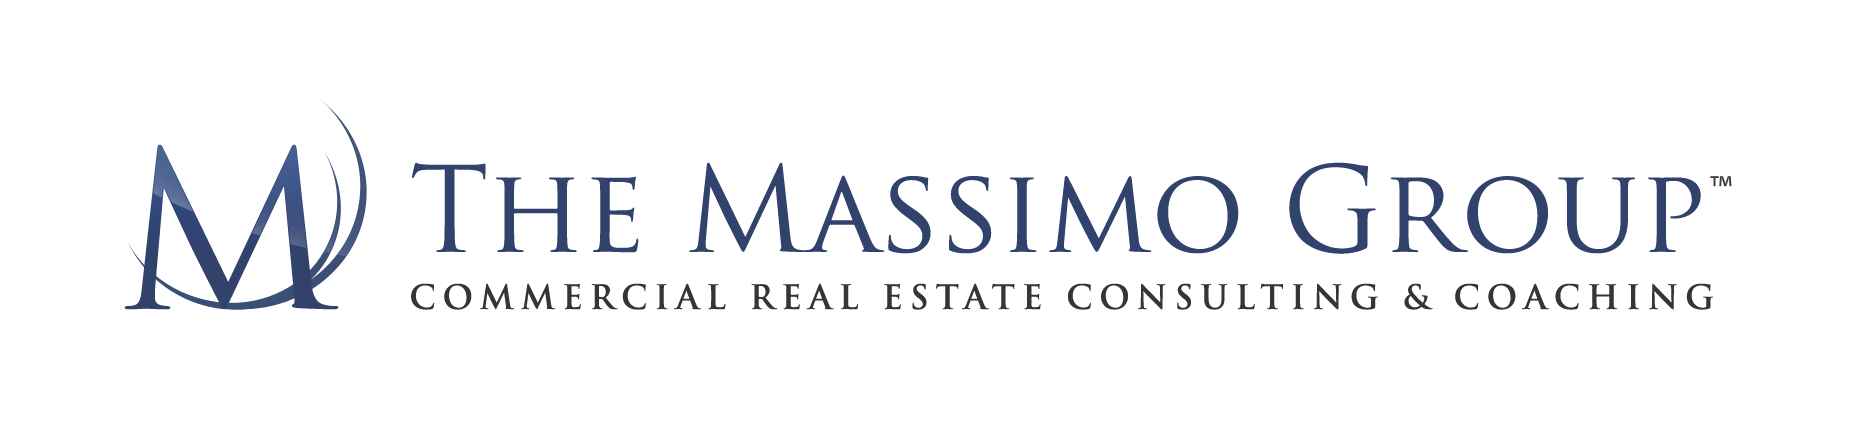 The Massimo Group